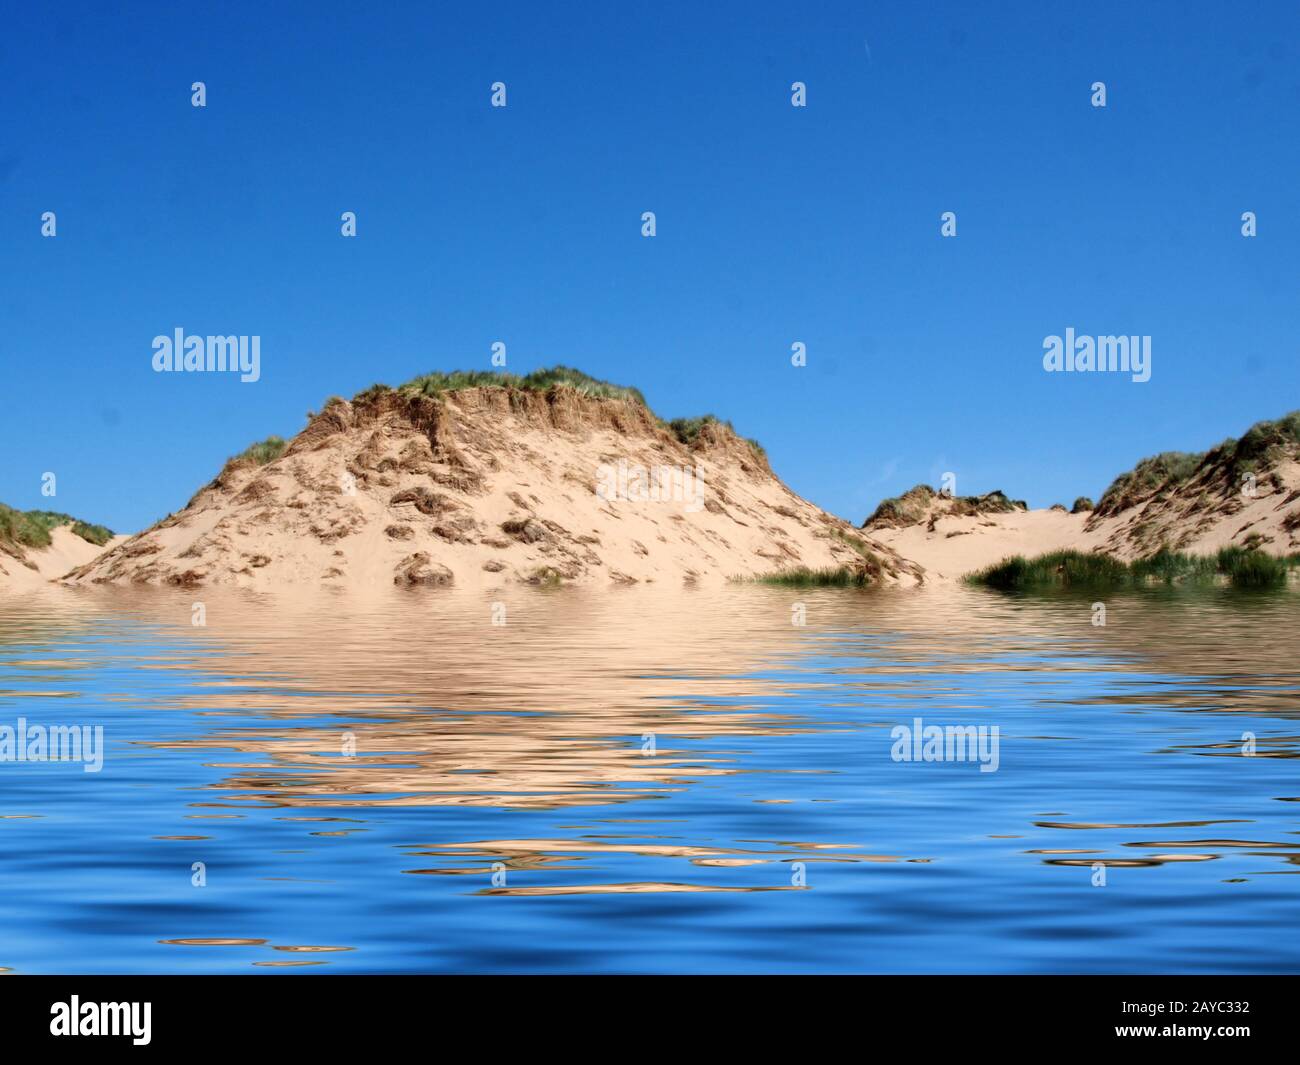 Der Strand vom Meer auf der formby merseyside mit hohen Sanddünen, die mit rauem Gras bedeckt sind, und einem blauen, sommerlichen Sonnenhimmel Stockfoto